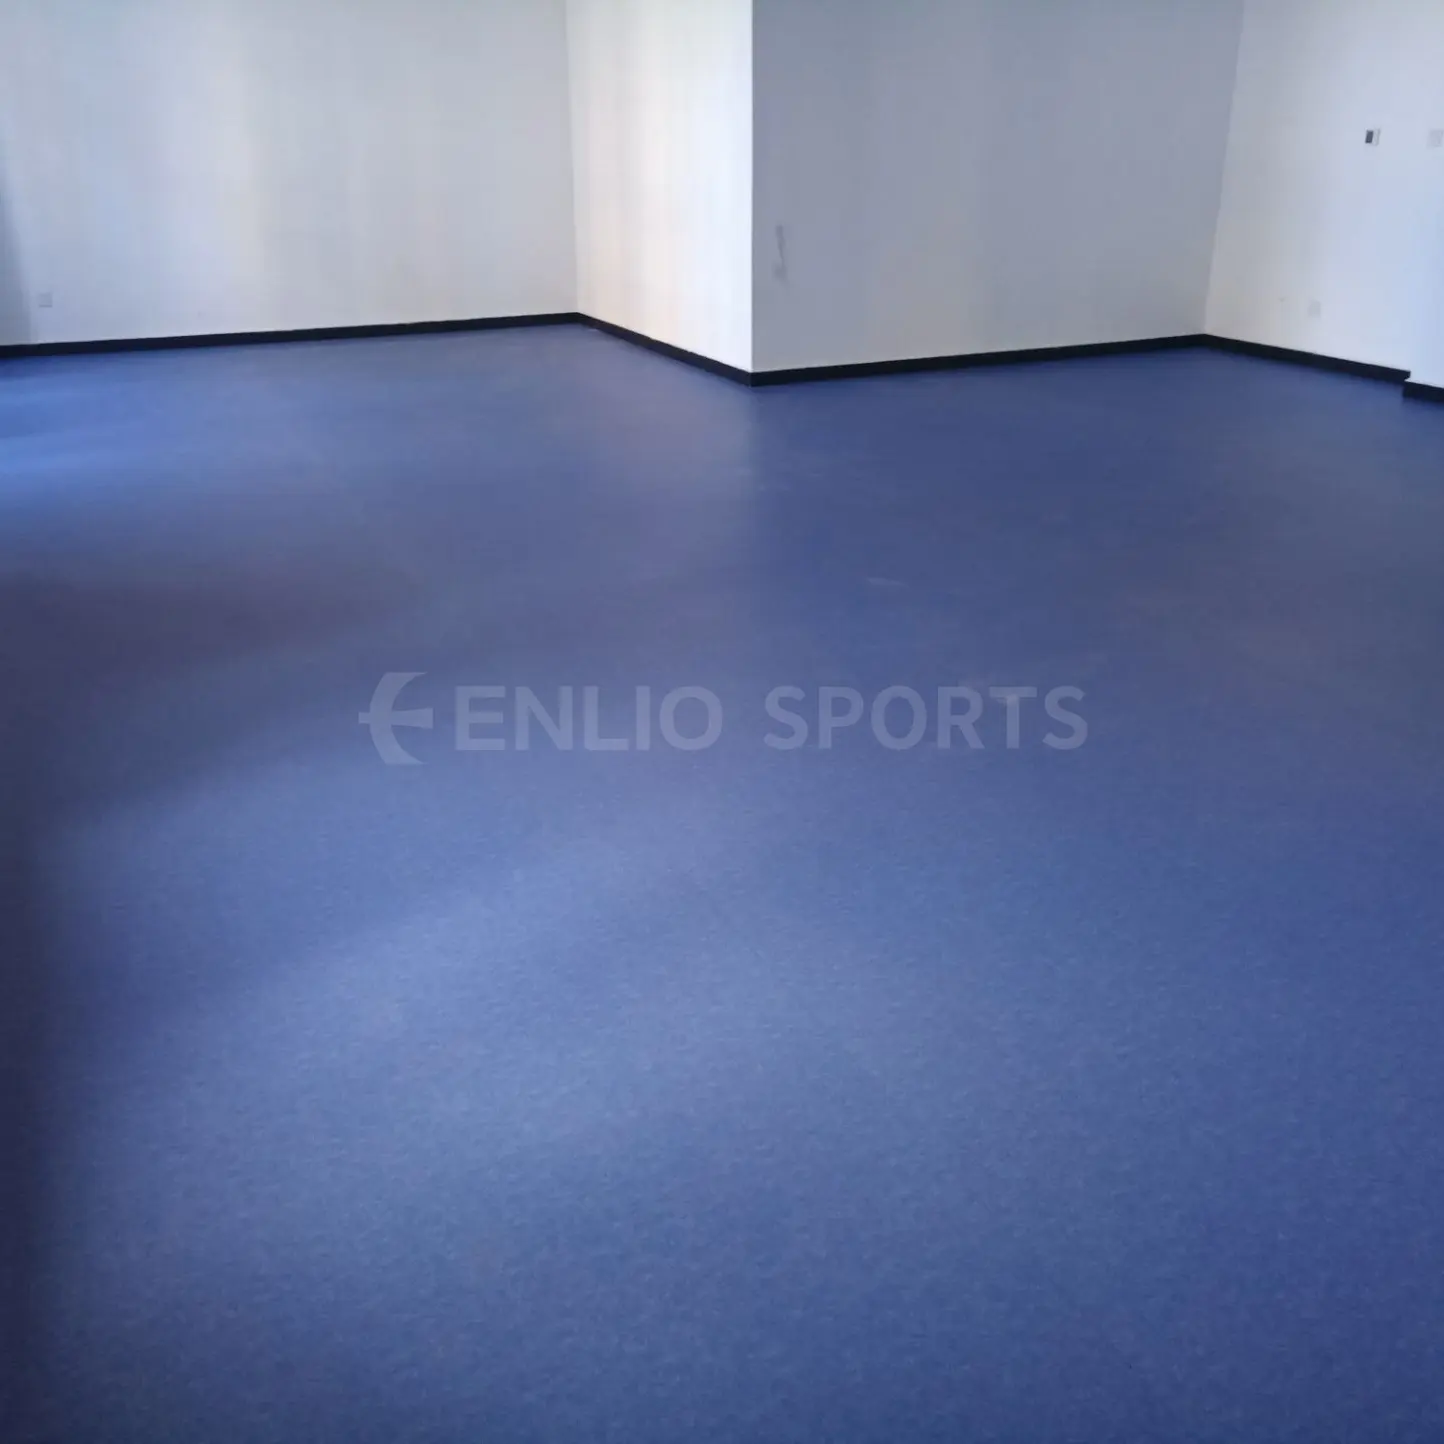 Enlio Factory Outlet Pvc Plástico Vinil Piso Folhas Linoleum Flooring Rolo Tapete Sala Cobrindo barato